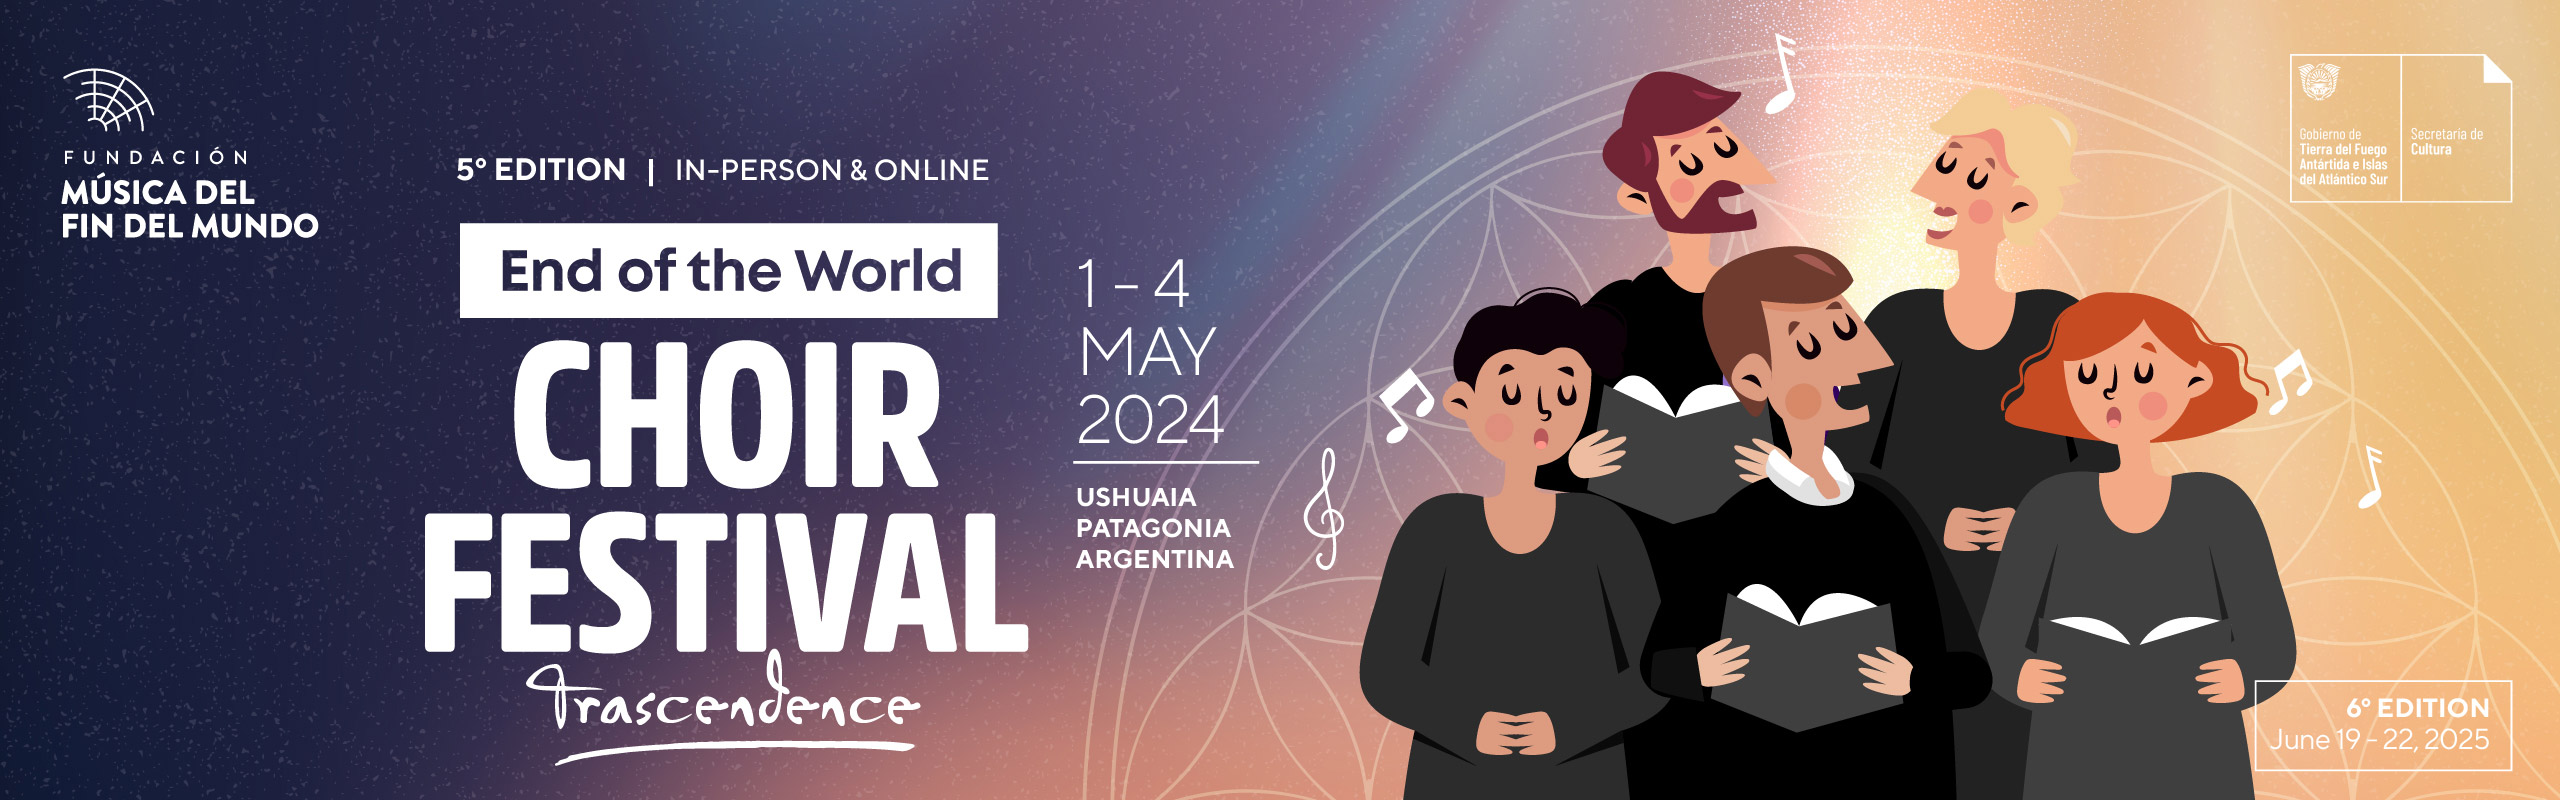 End of the world Choir Festiva 2024